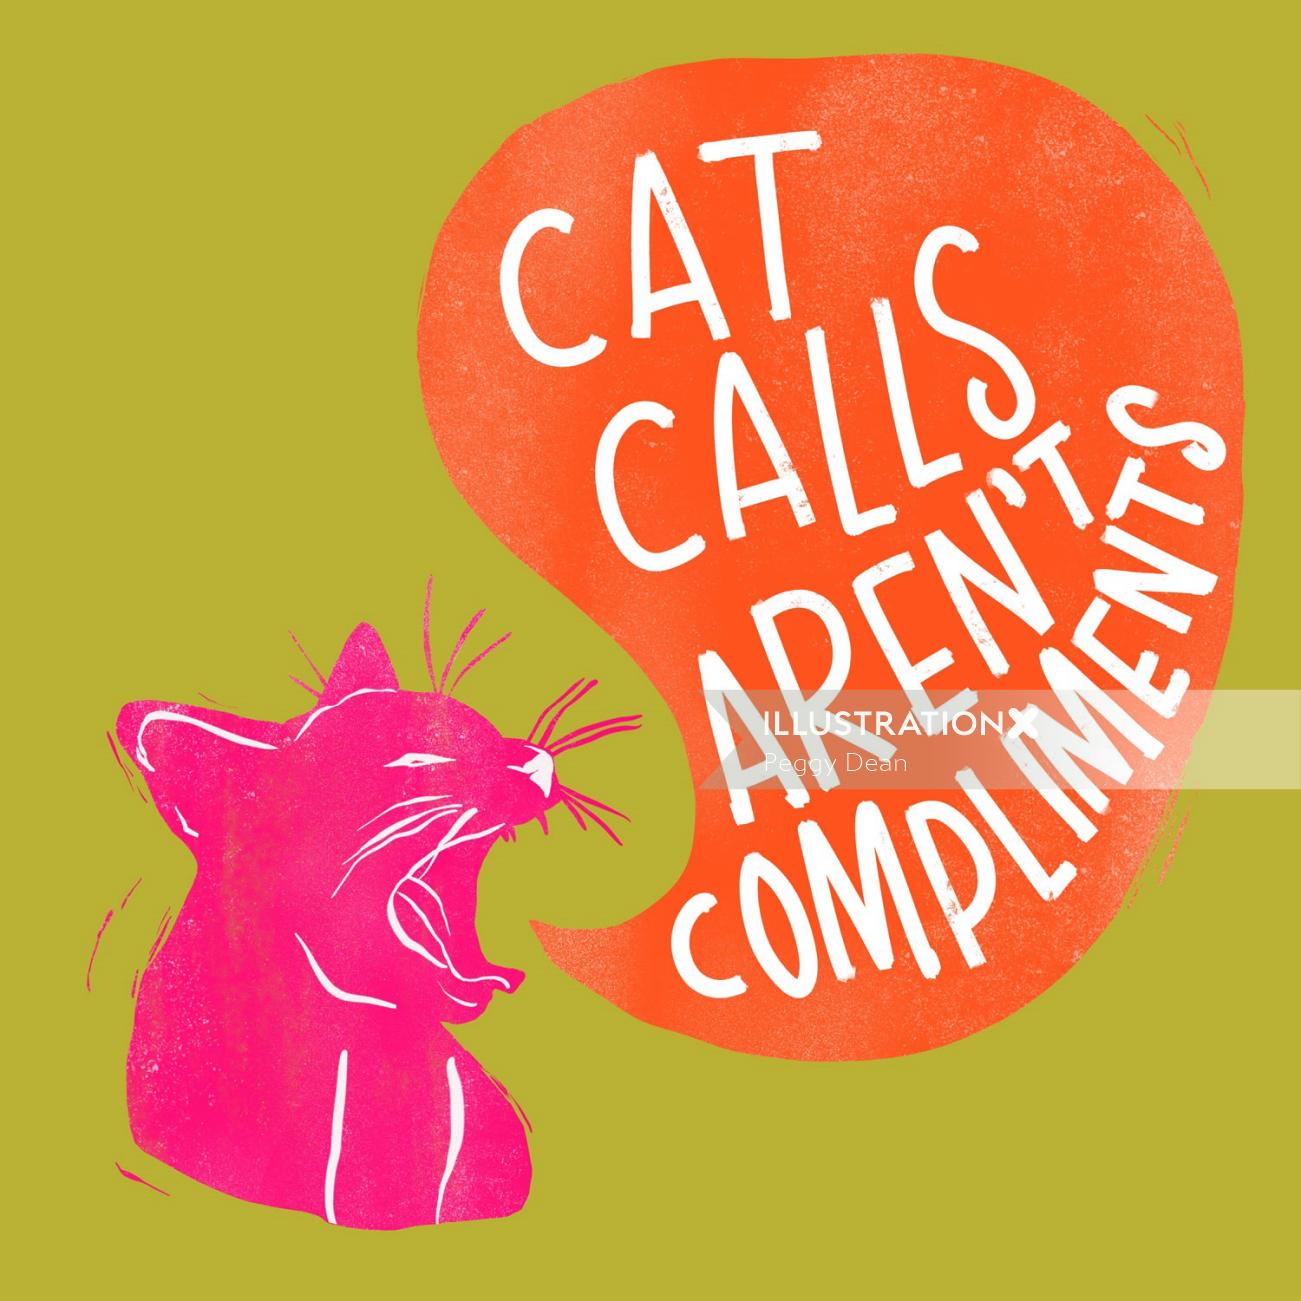 Las letras del arte de las llamadas de gatos no son cumplidos